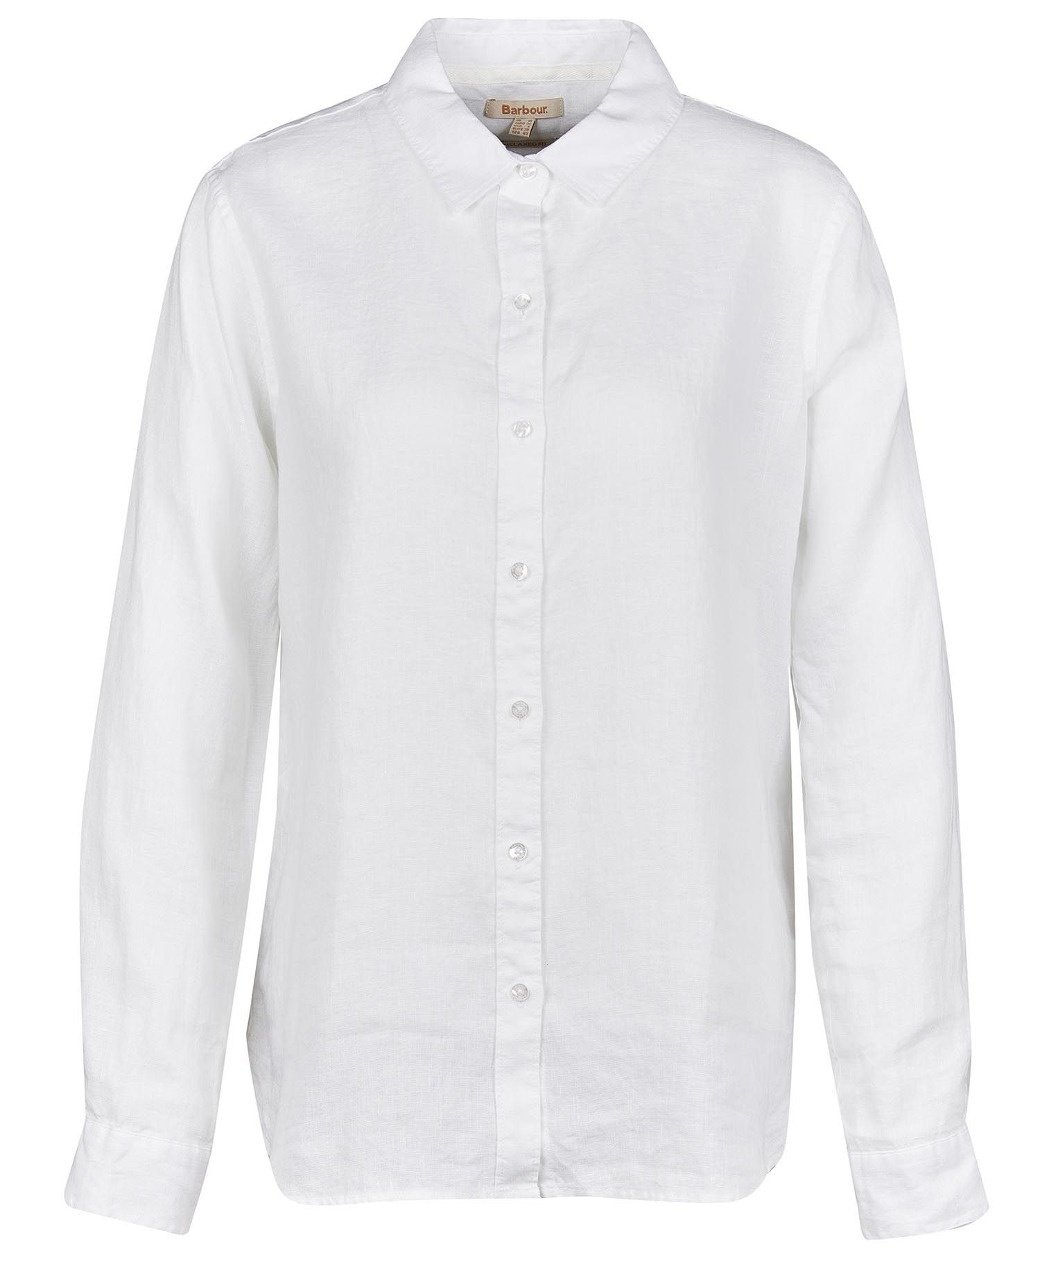 Barbour Marine Shirt White-2